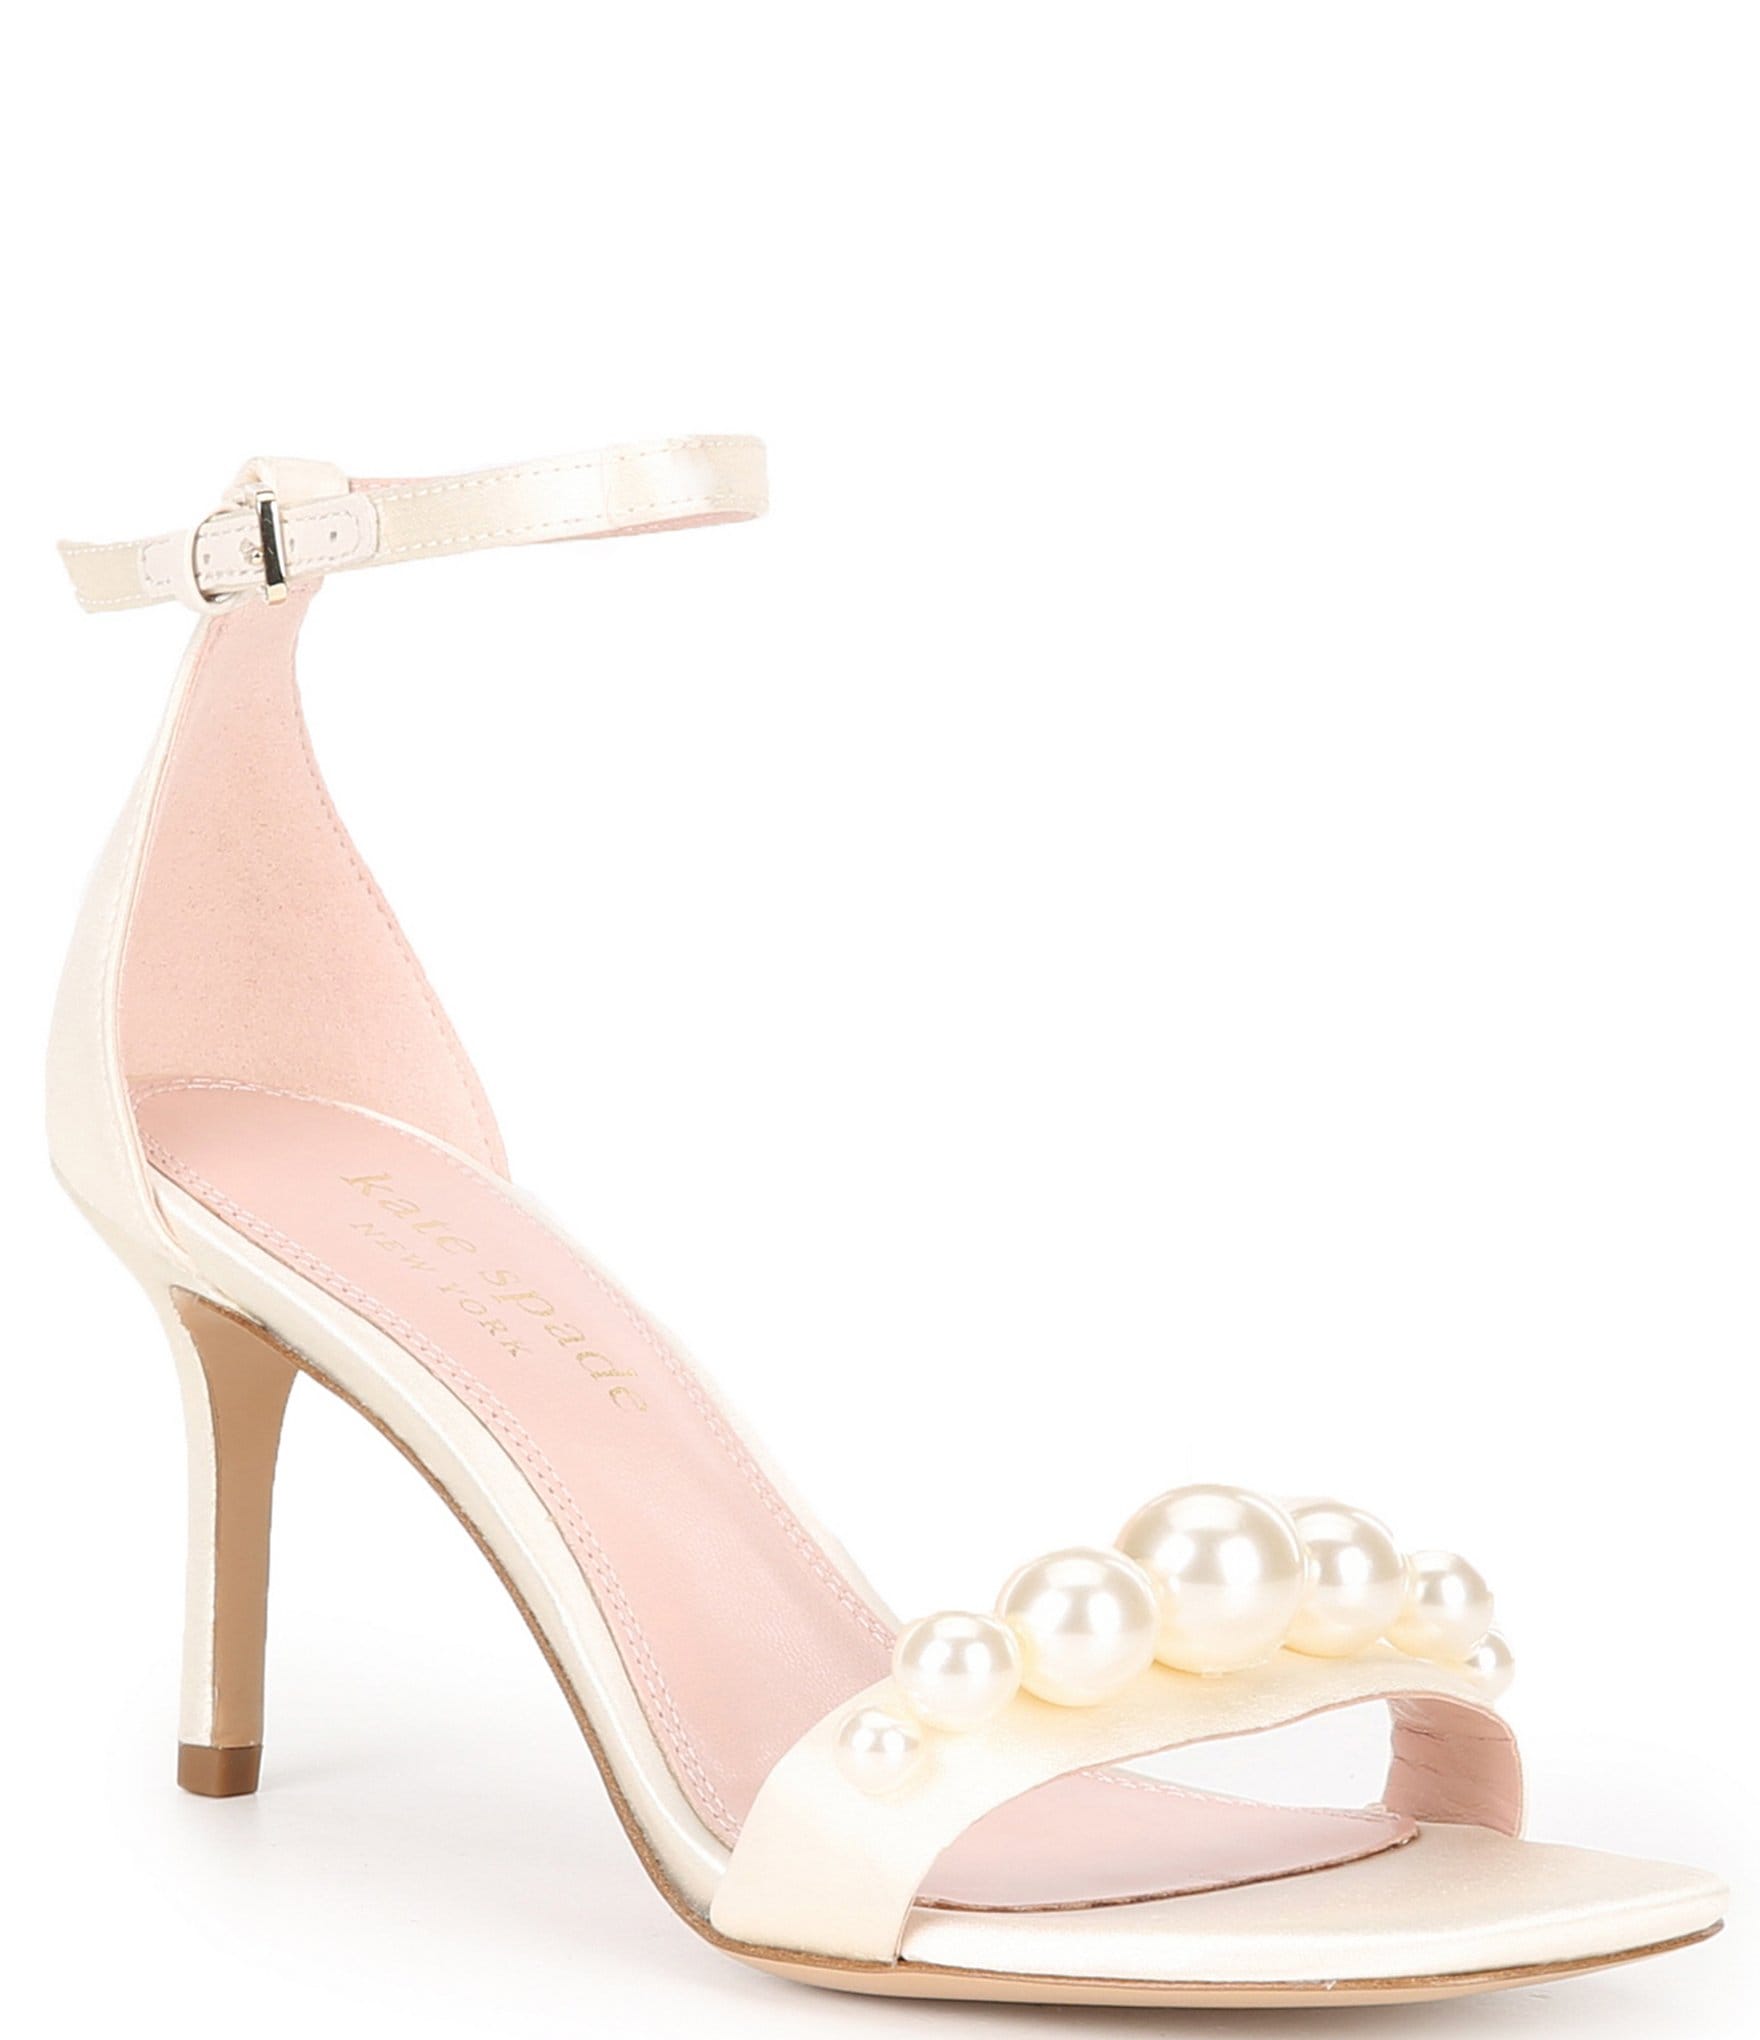 kate spade bridal: Women's Shoes | Dillard's